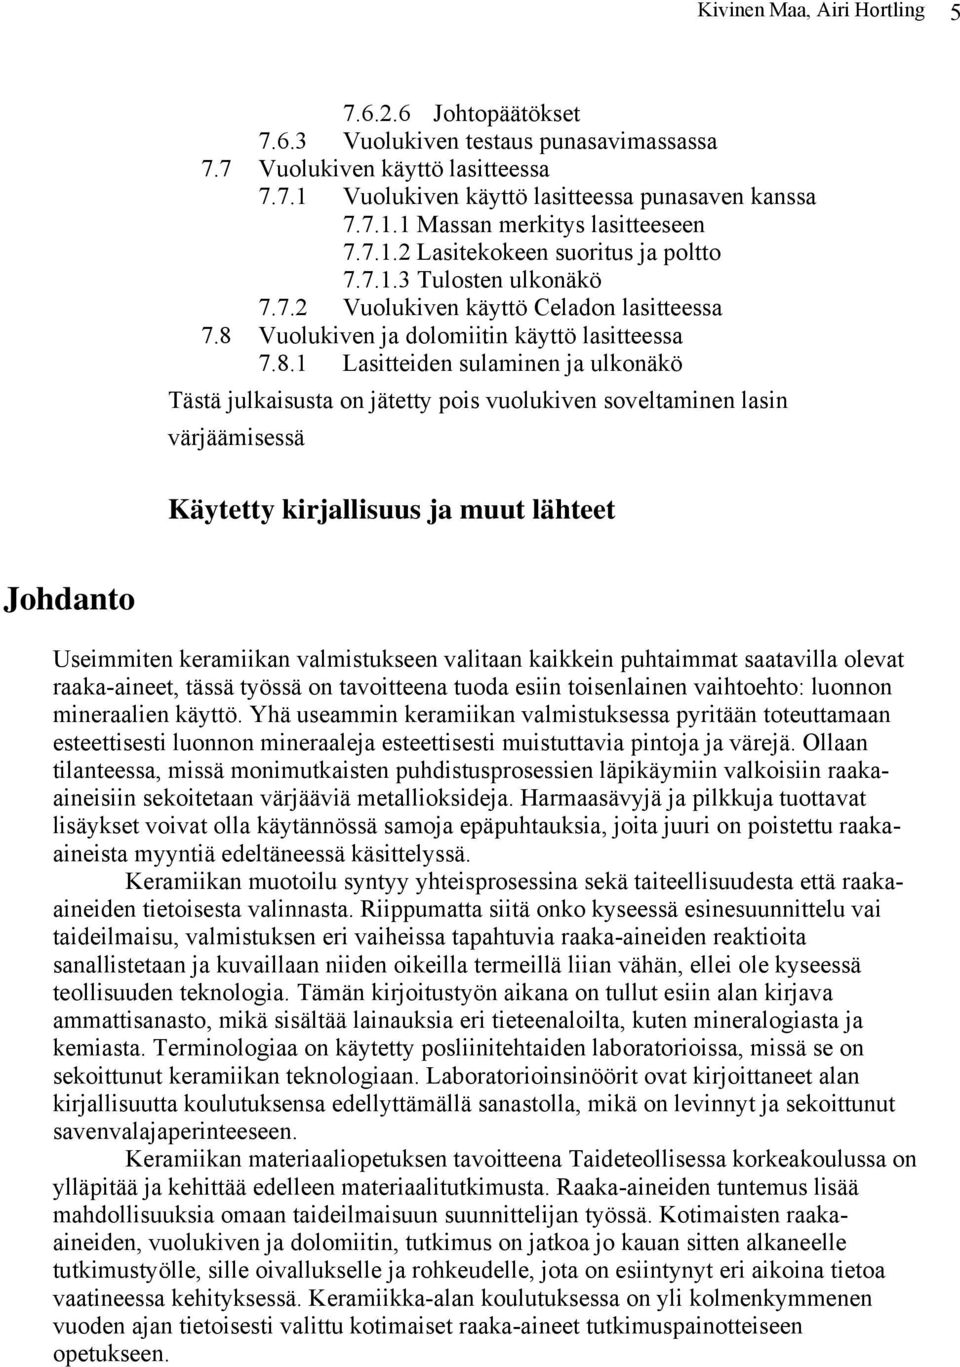 Vuolukiven ja dolomiitin käyttö lasitteessa 7.8.